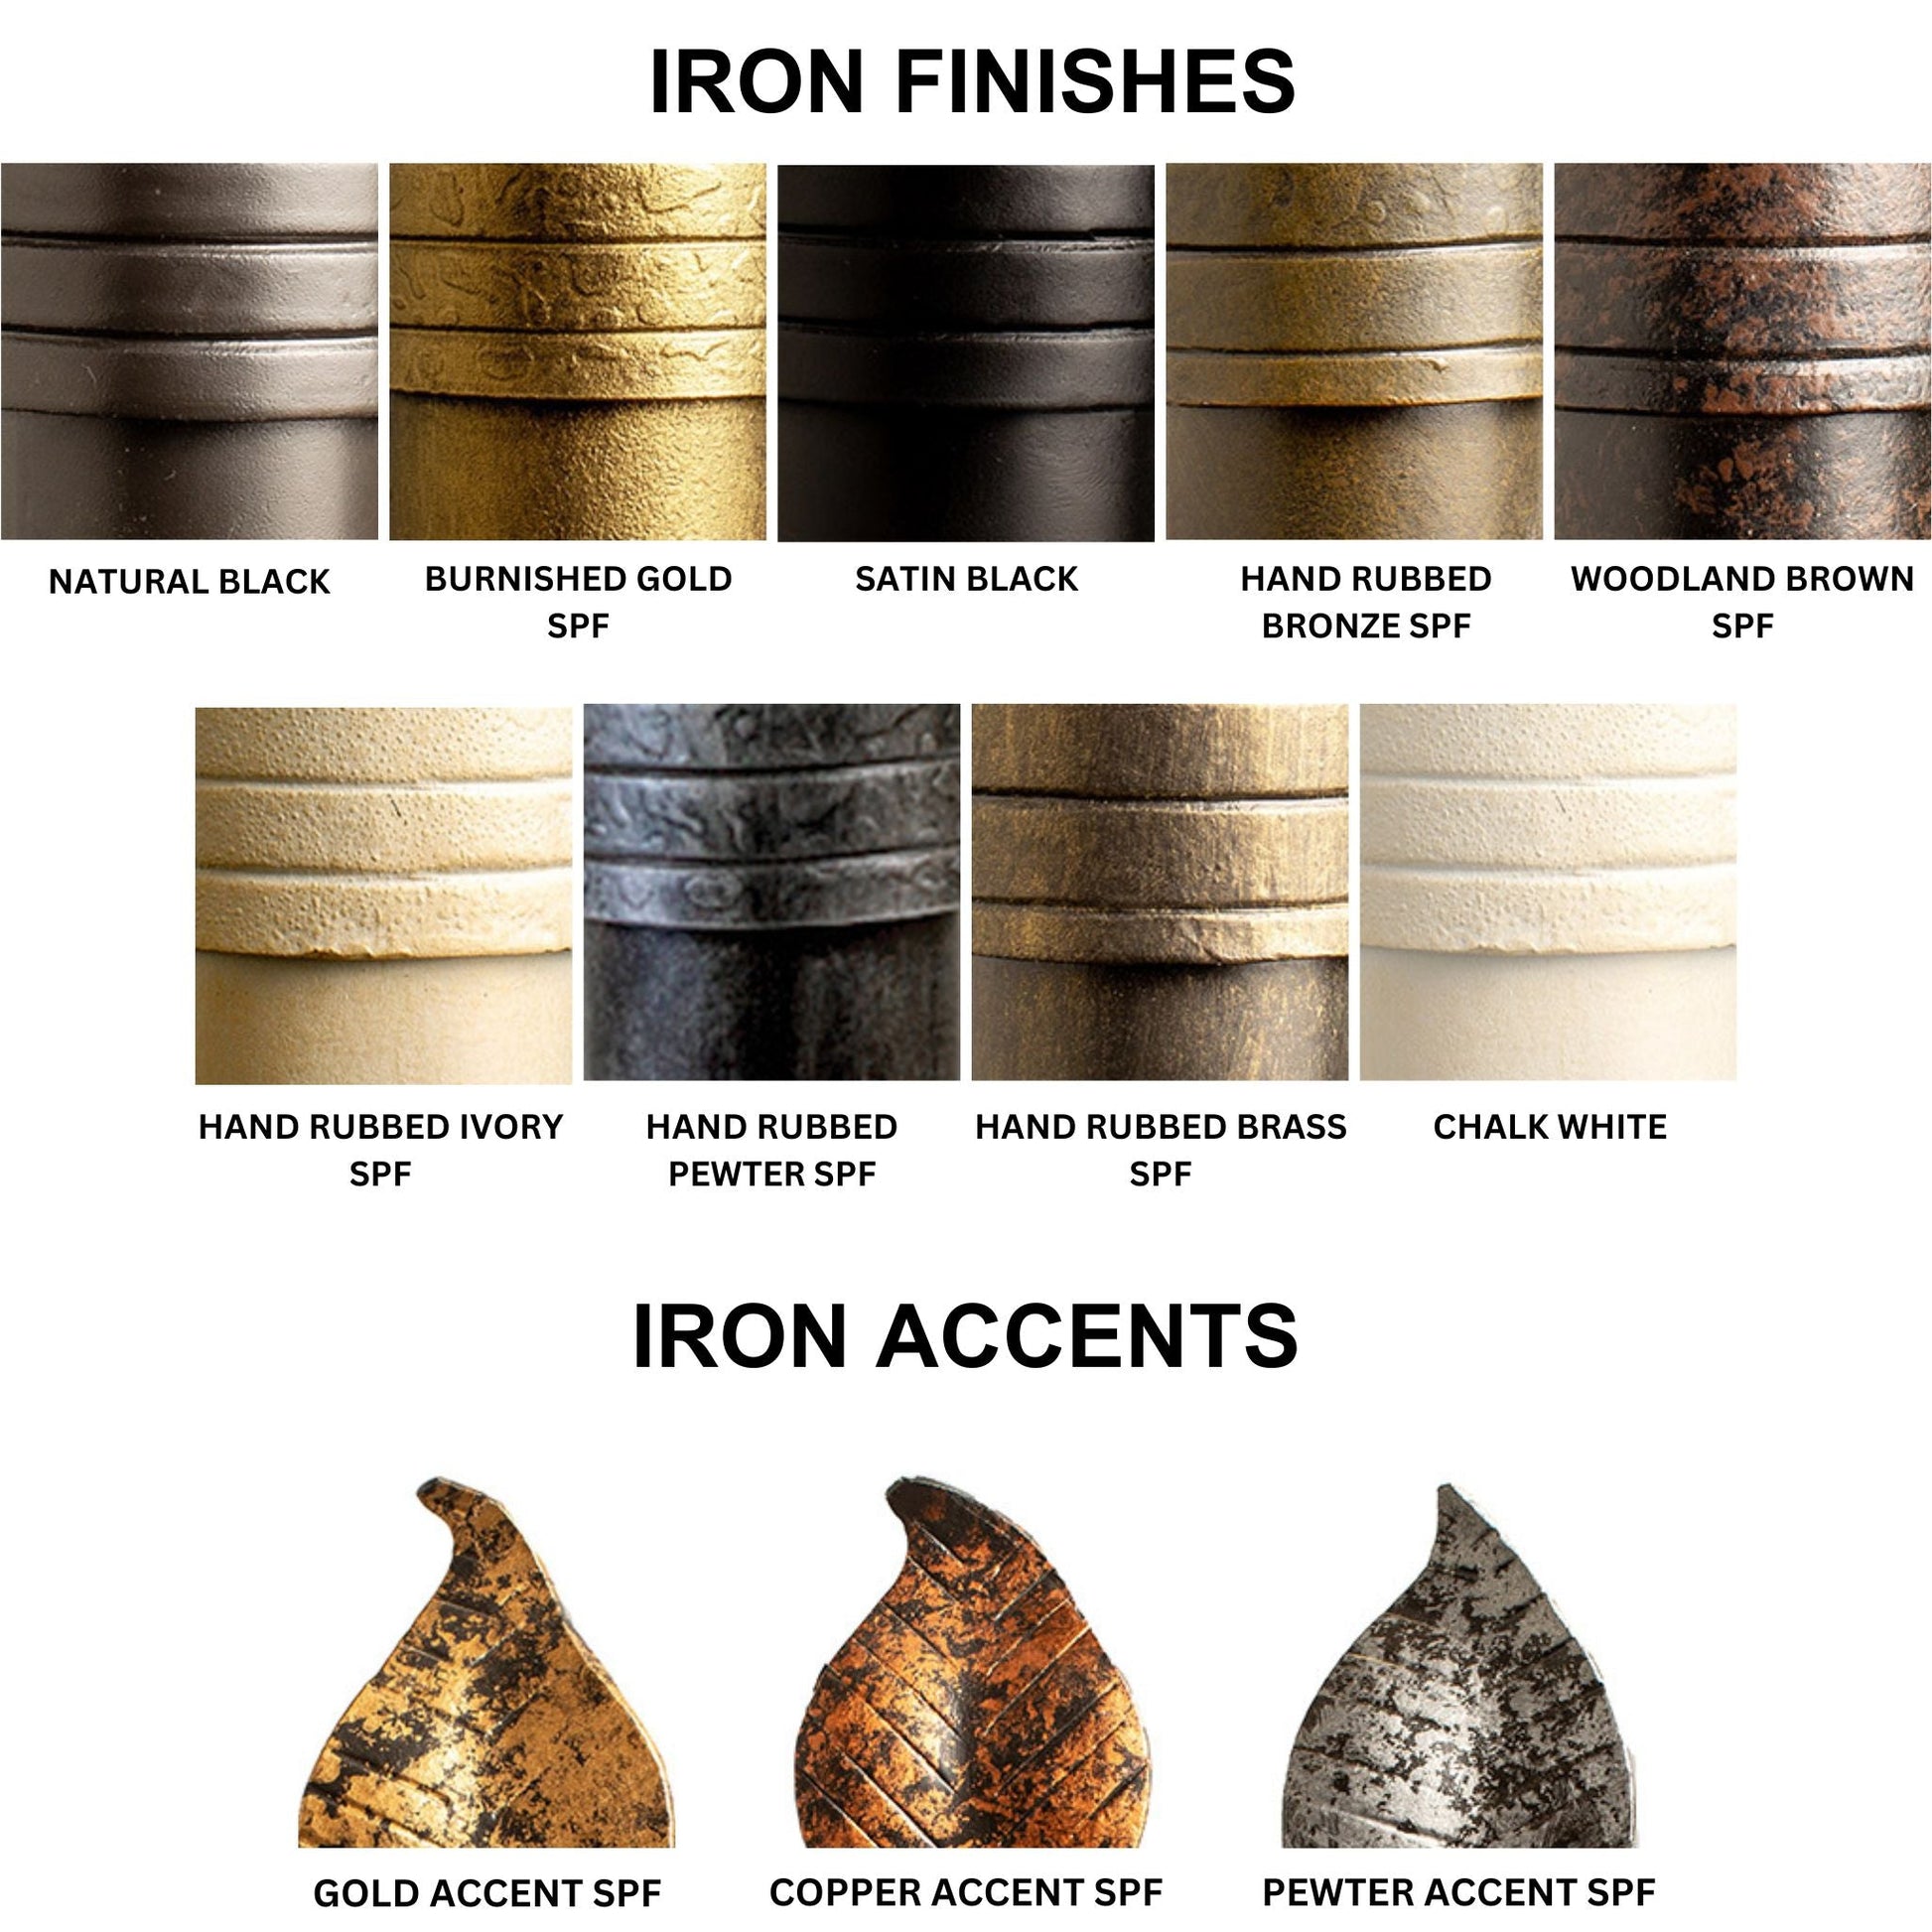 Stone County Ironworks Sassafras 16" Burnished Gold Iron Towel Bar